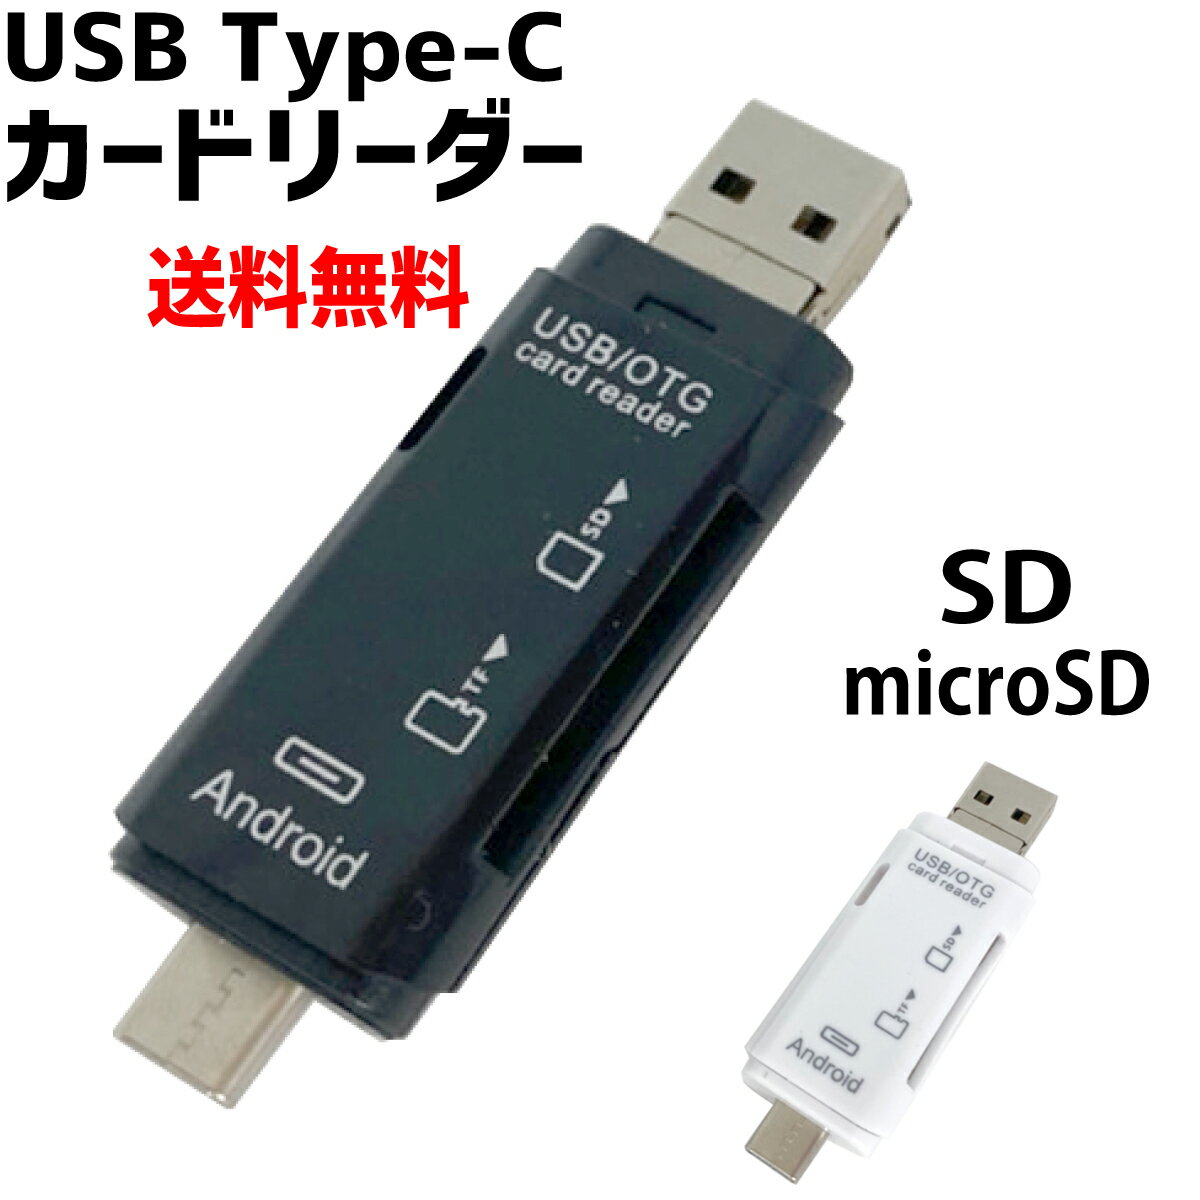 【P2倍!】 Type-C USB3.1カードリーダー USB2.0 microUSB SDカード microSD マルチカードリーダー スマホ PC